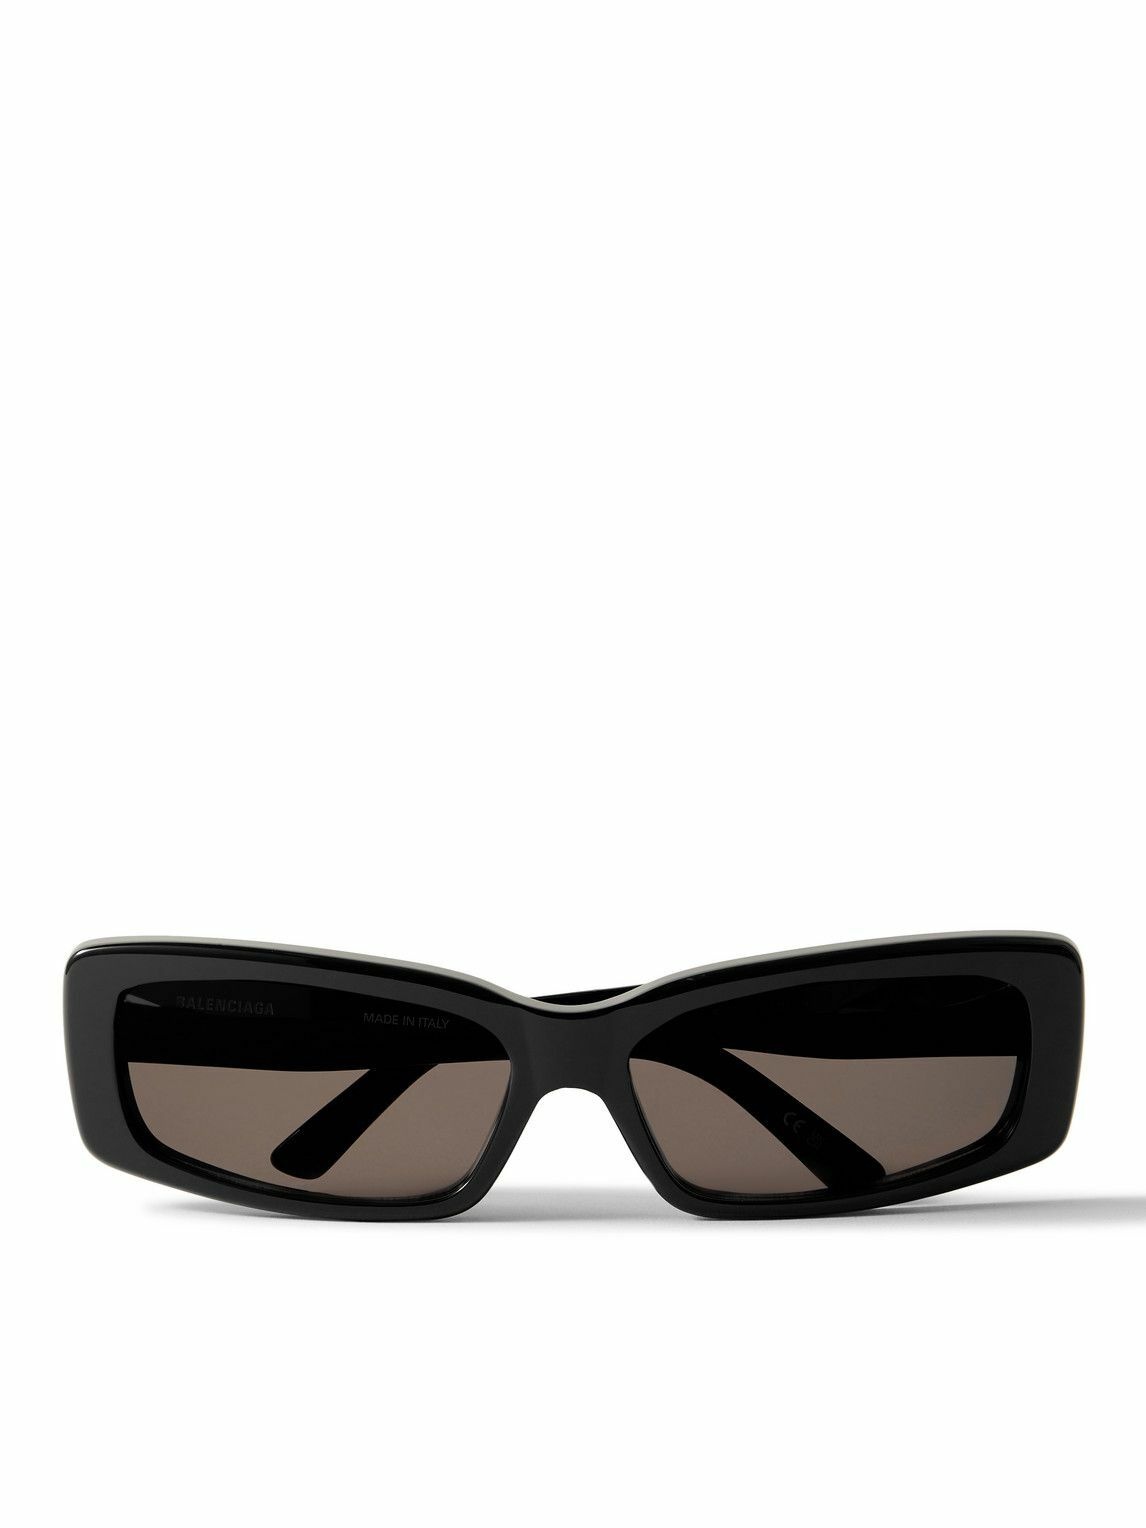 Balenciaga - Rectangular-Frame Acetate Sunglasses Balenciaga